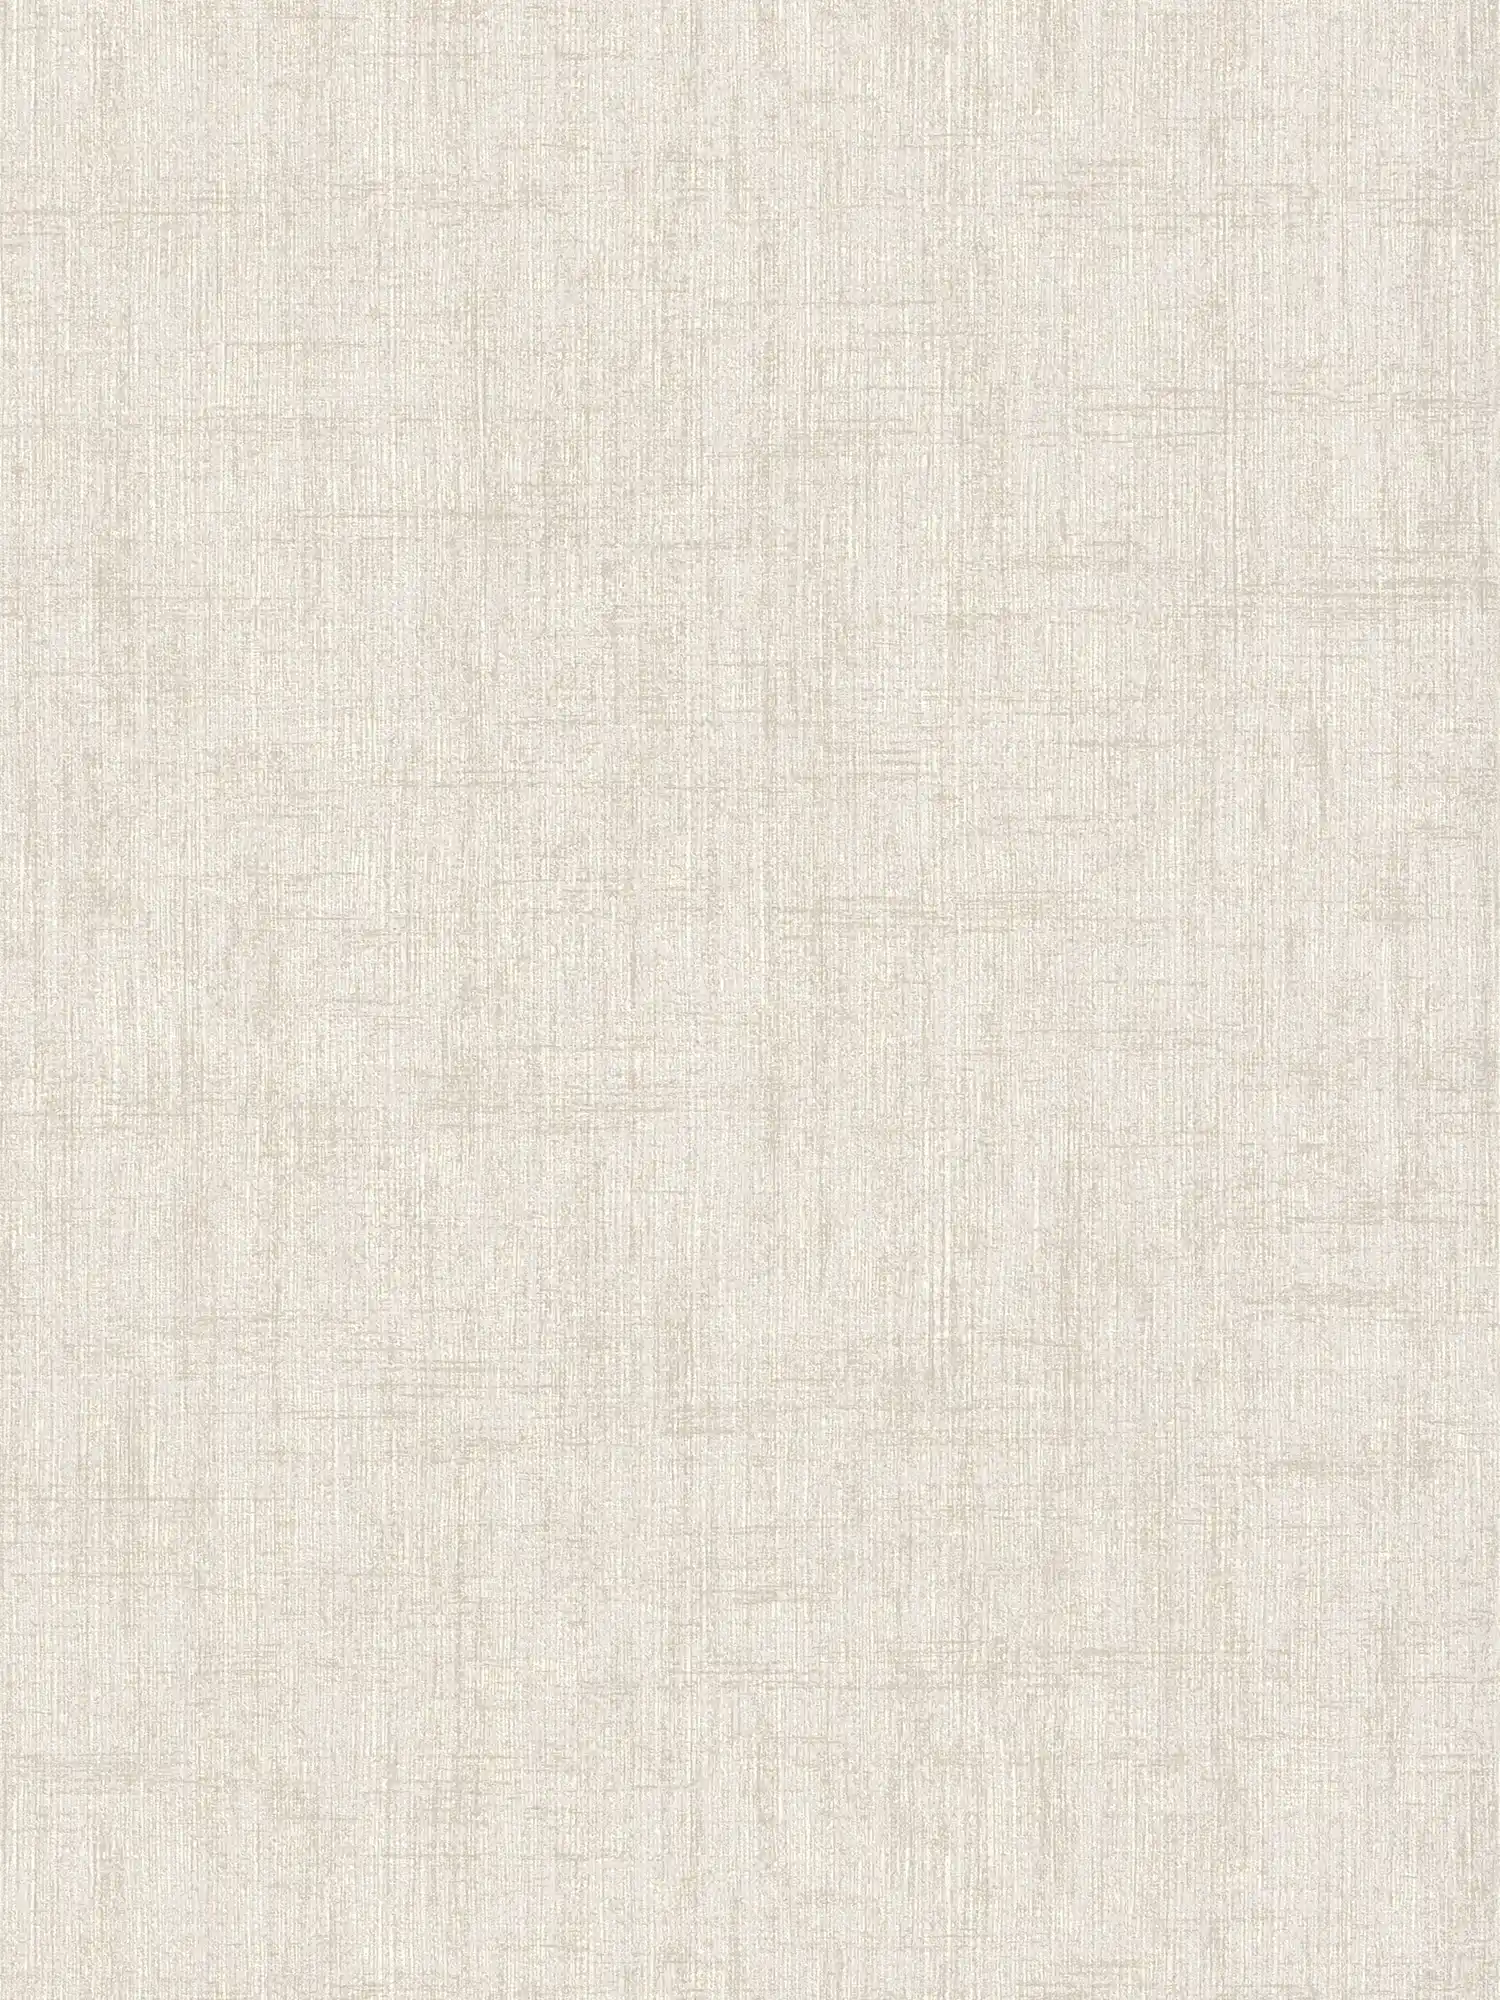 Linen look wallpaper with rustic texture design - cream
